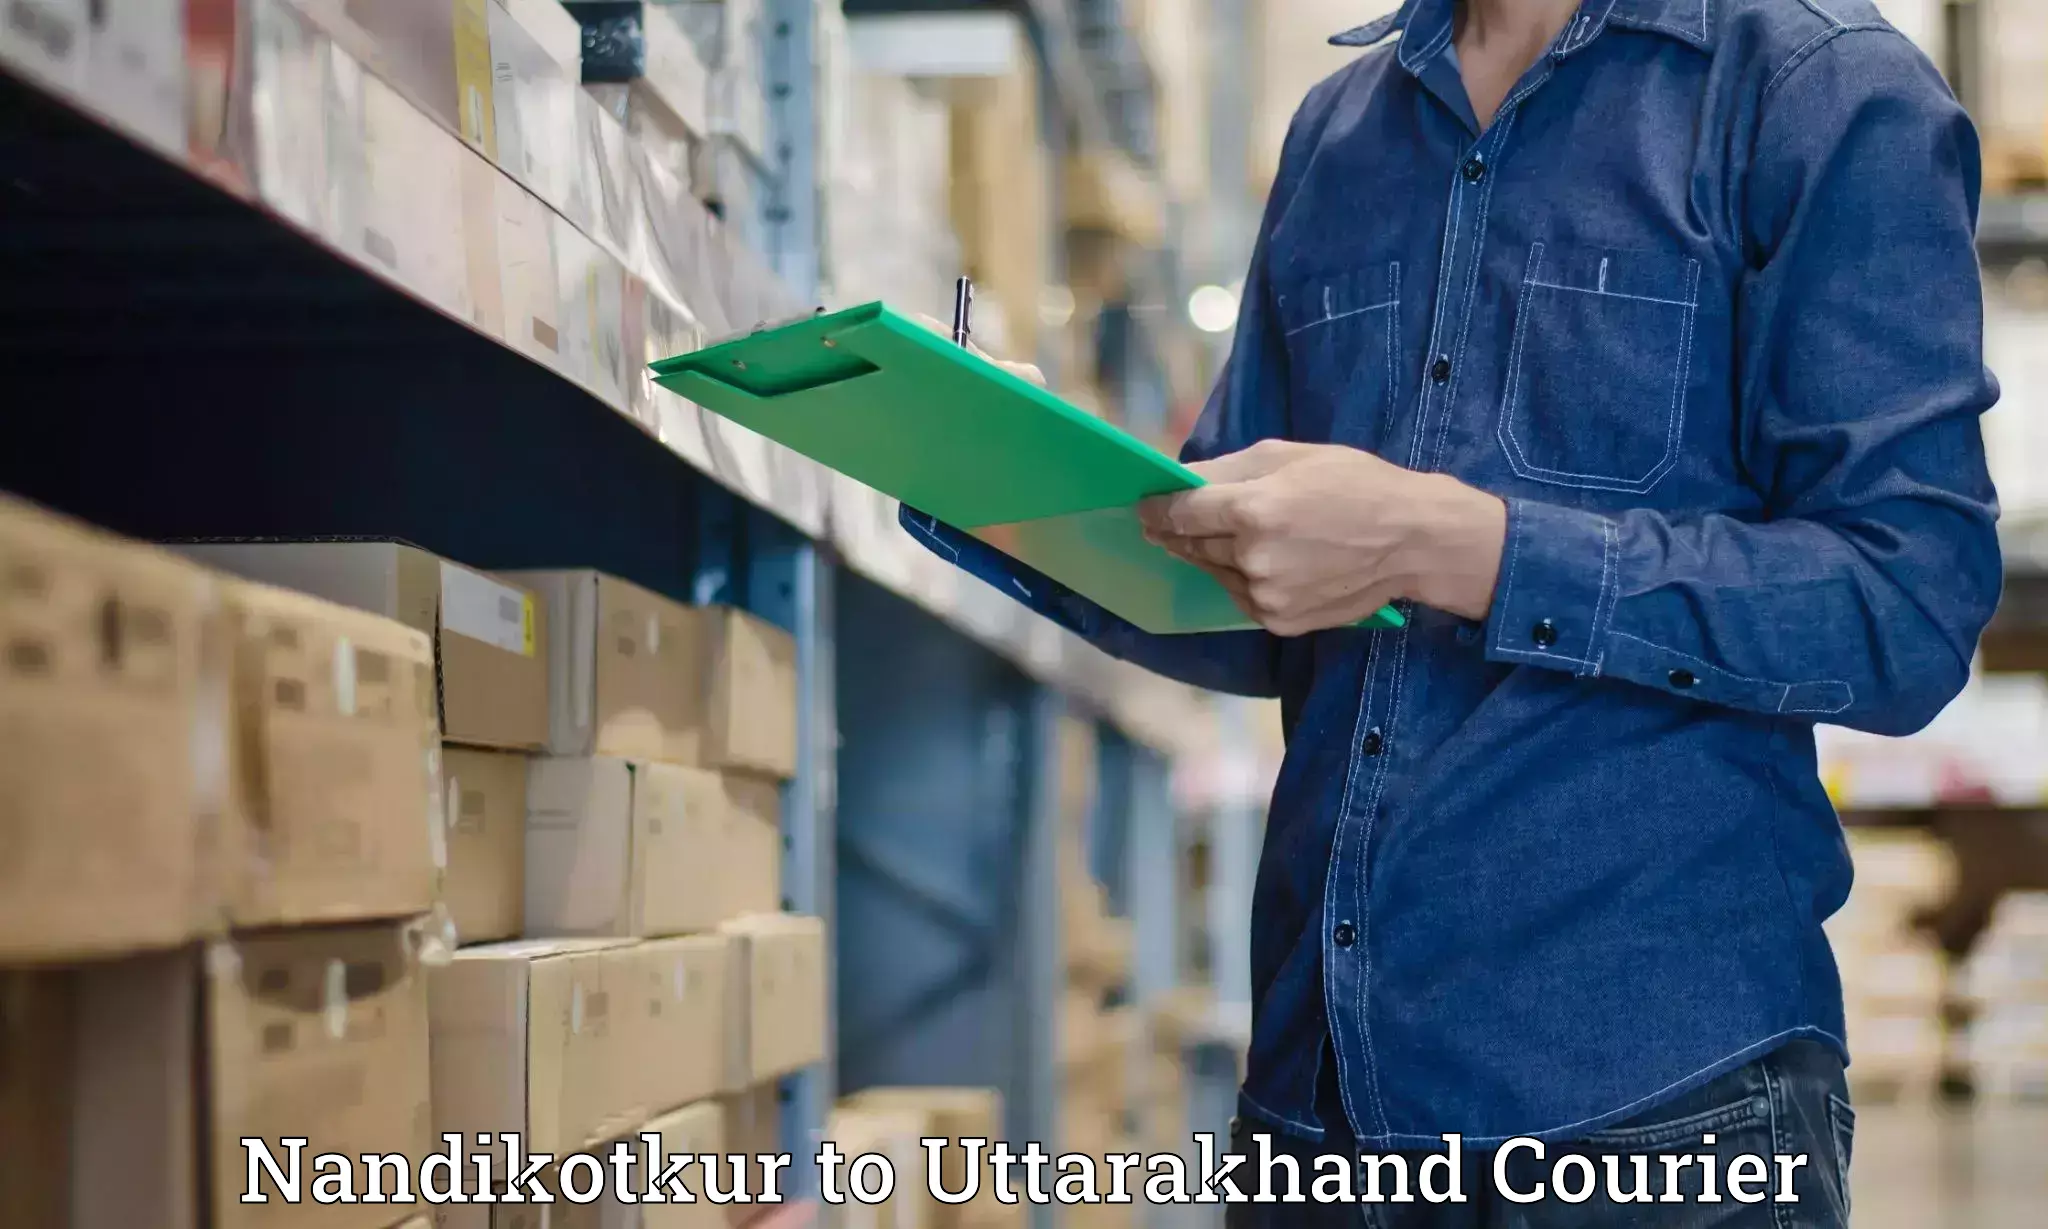 Courier app Nandikotkur to IIT Roorkee